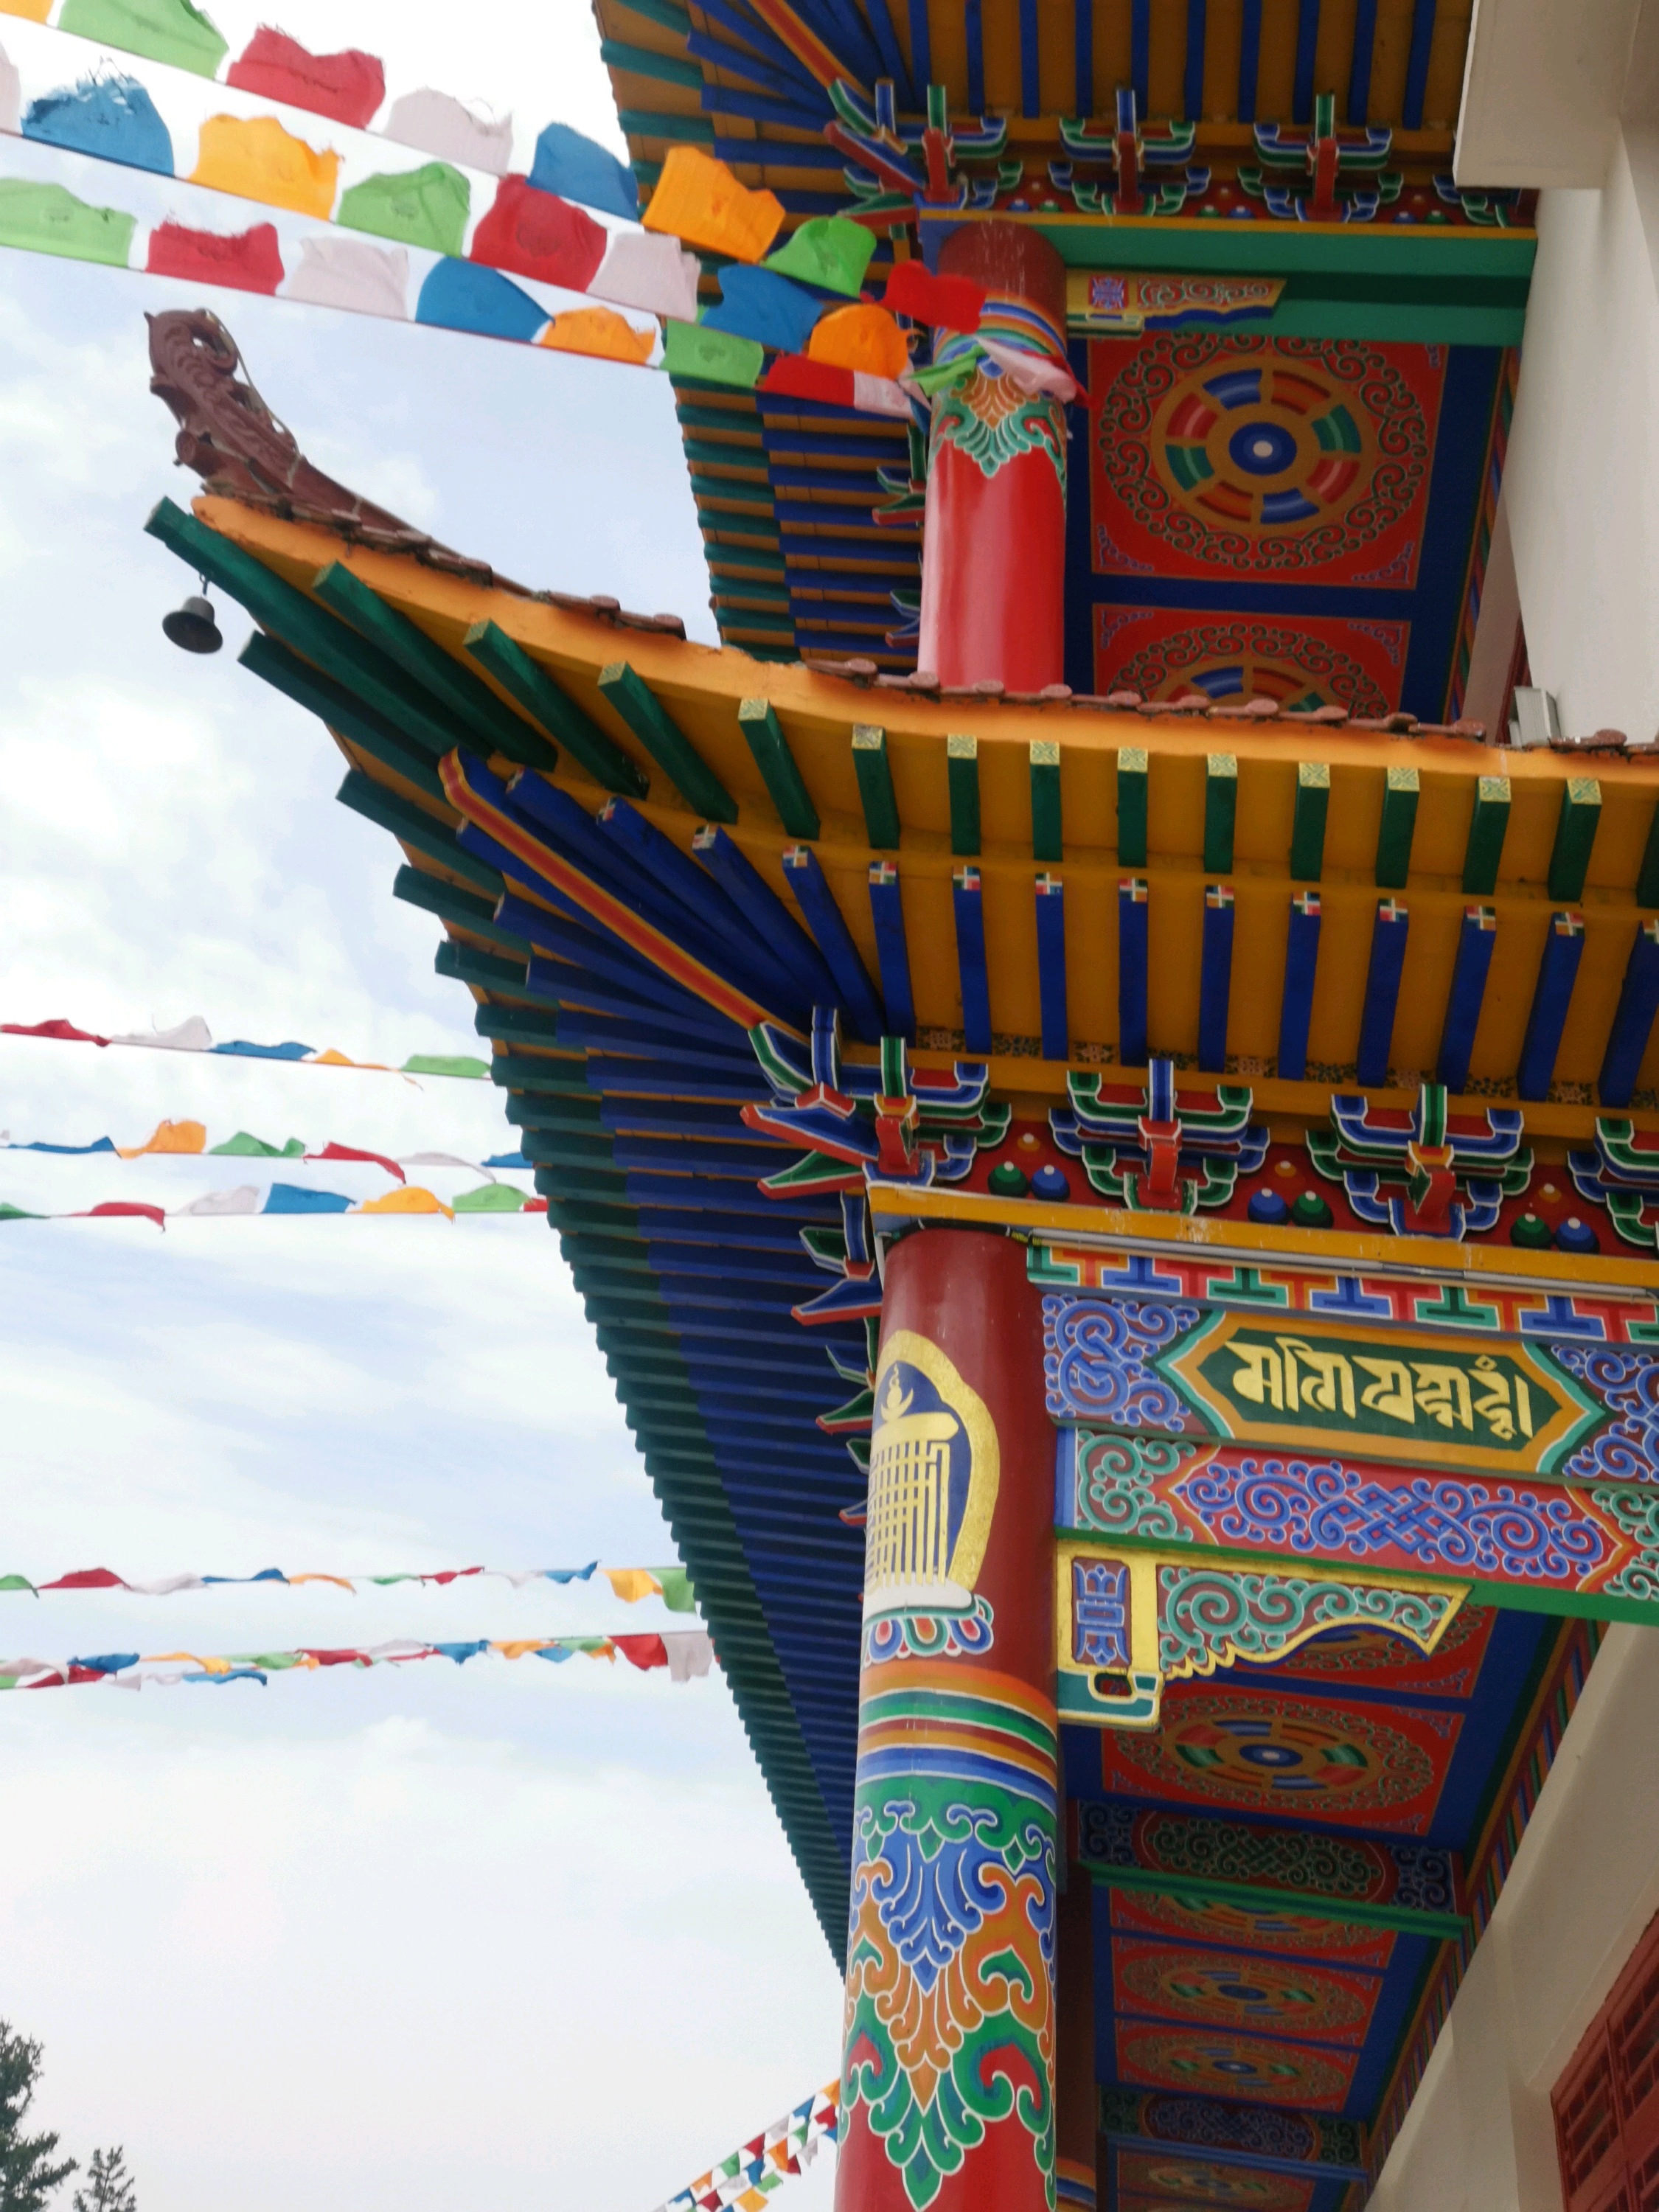 第一次走进了一座蒙族地区的喇嘛寺院-葛根庙